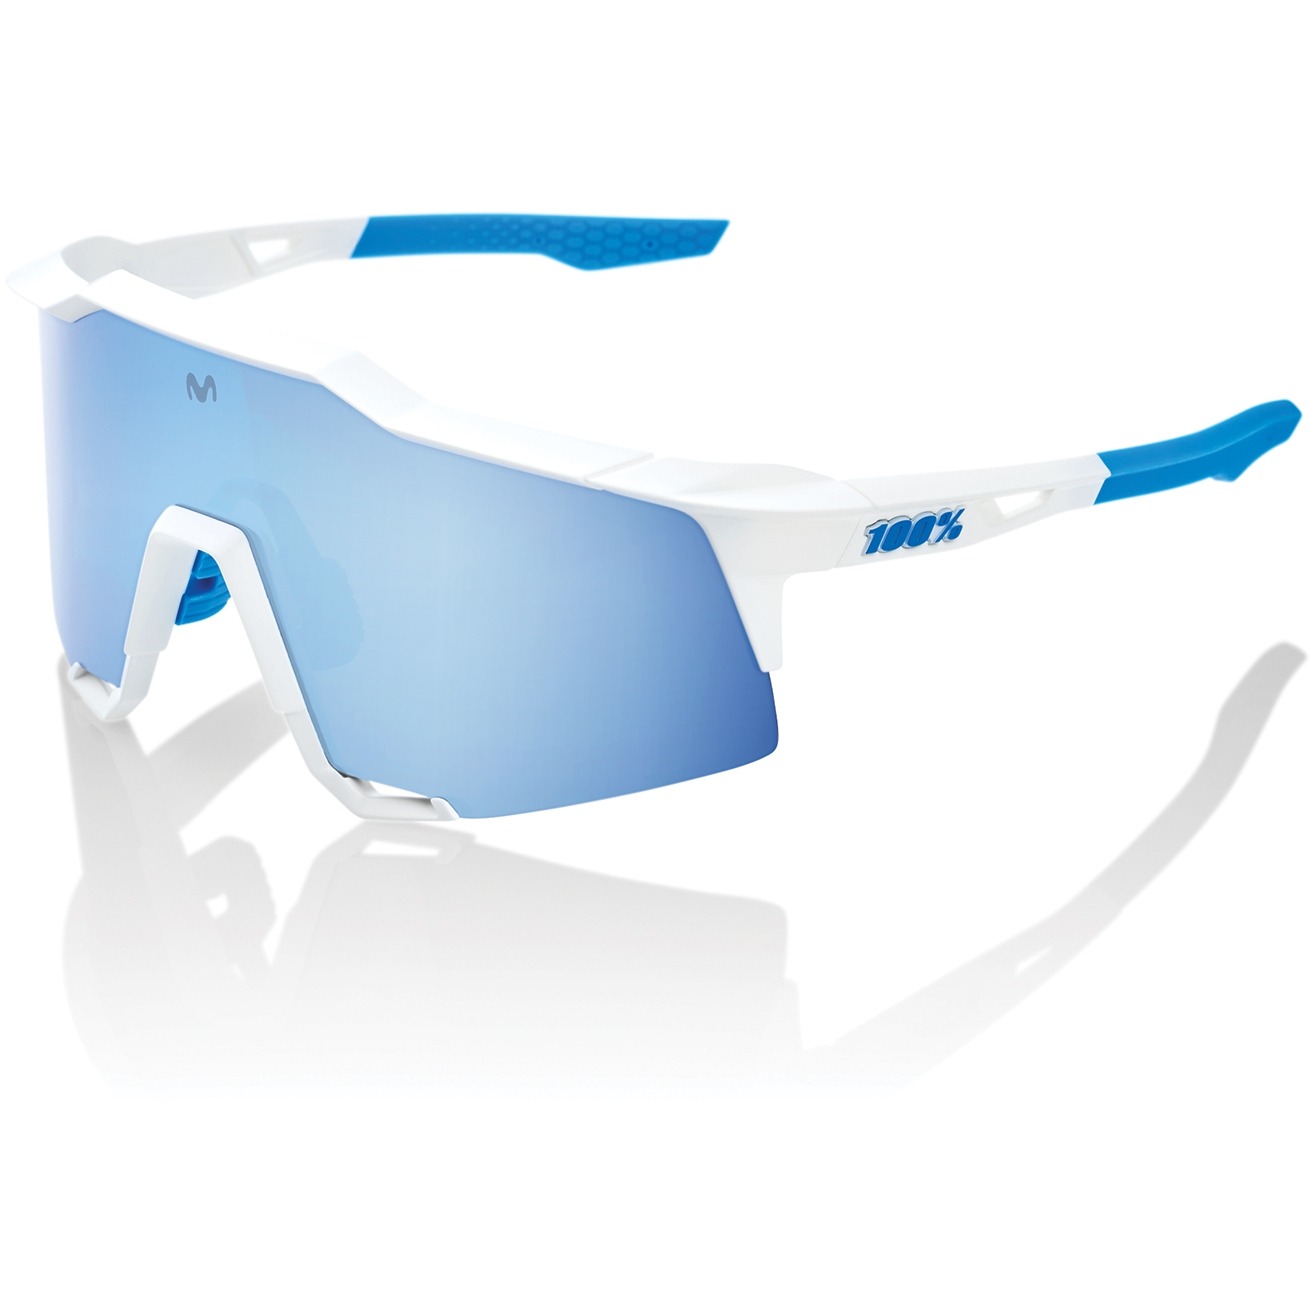 Produktbild von 100% Speedcraft Movistar Brille - HiPER Mirror Lens - Team White / Blue